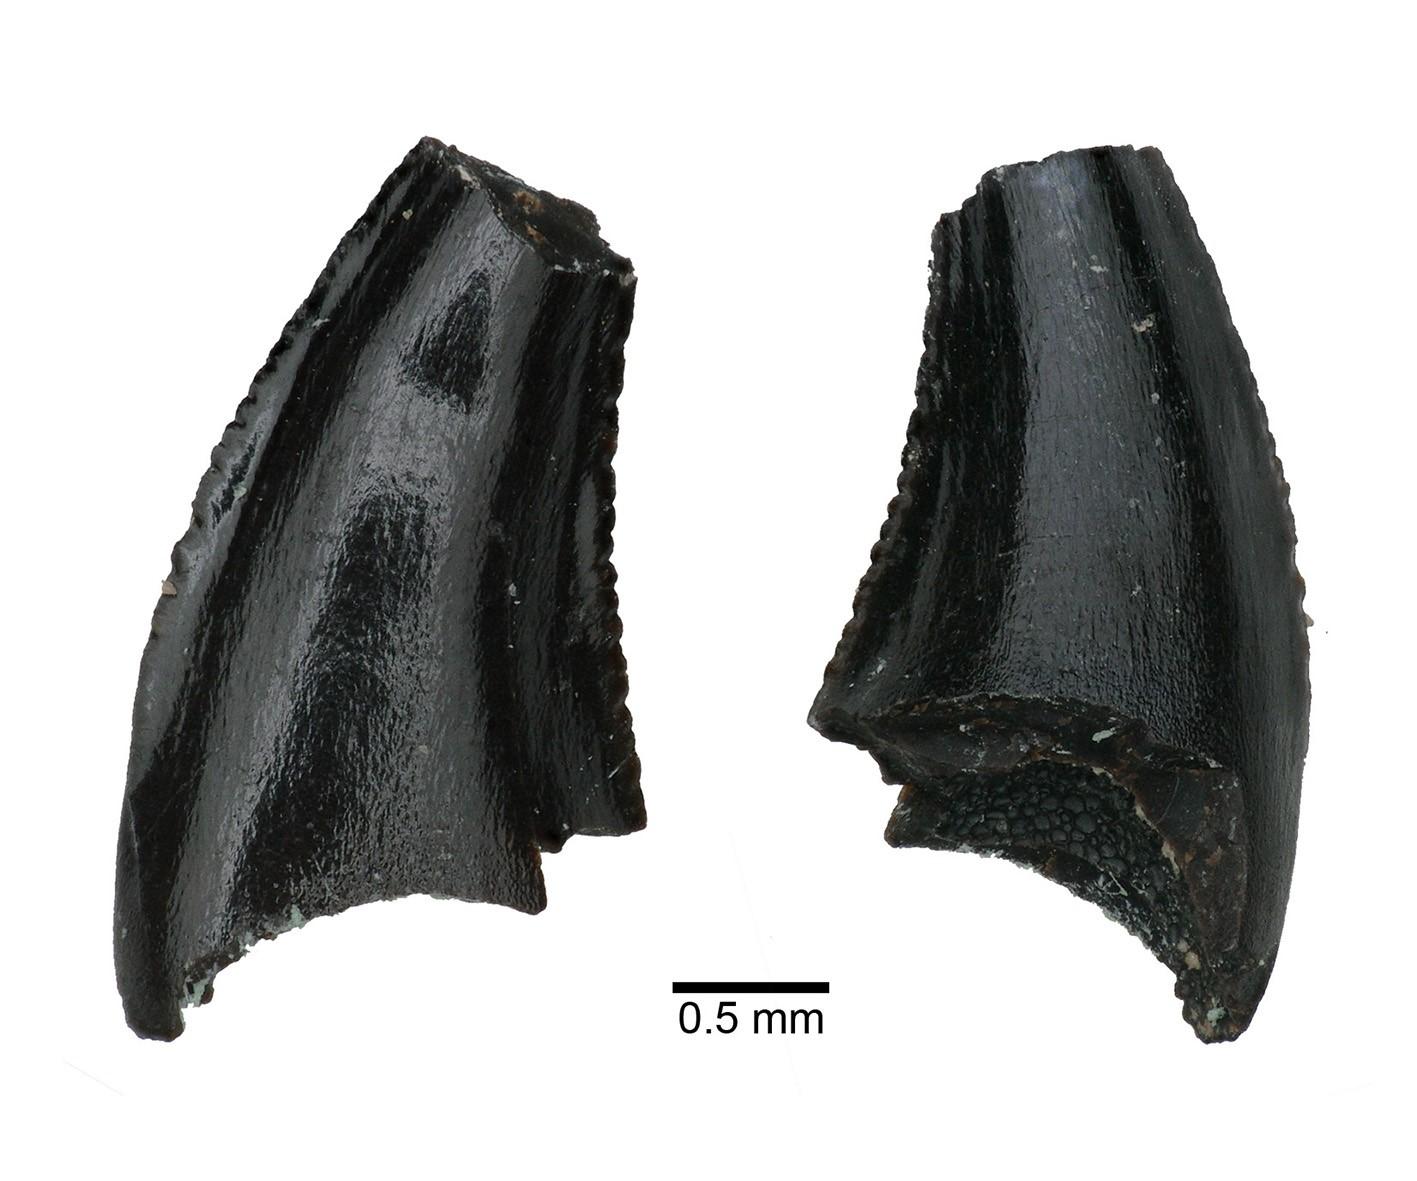 Le paléontologue Bastien Mennecar a trouvé les dents fossilisées d'un varan près de Langnau (BE). [Musée d'histoire naturelle de Bâle - Bastien Mennercart]